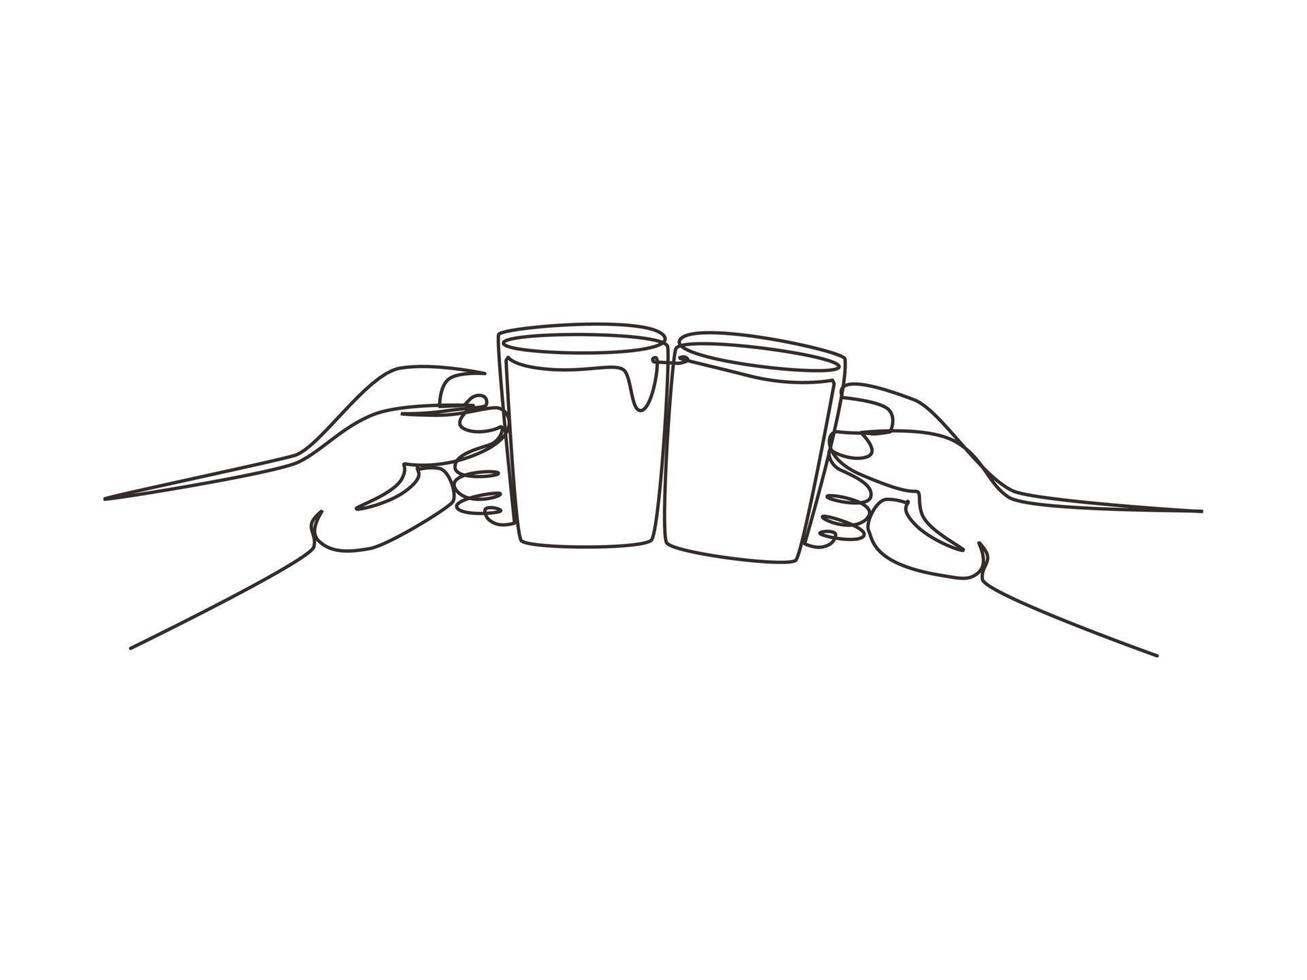 kontinuerlig en rad teckning närbild beskuren av kvinna man två händer horisontellt håller koppar te, rostat klirrande. vänner fritid, hälsosam livsstil. enkel rad rita design vektorillustration vektor